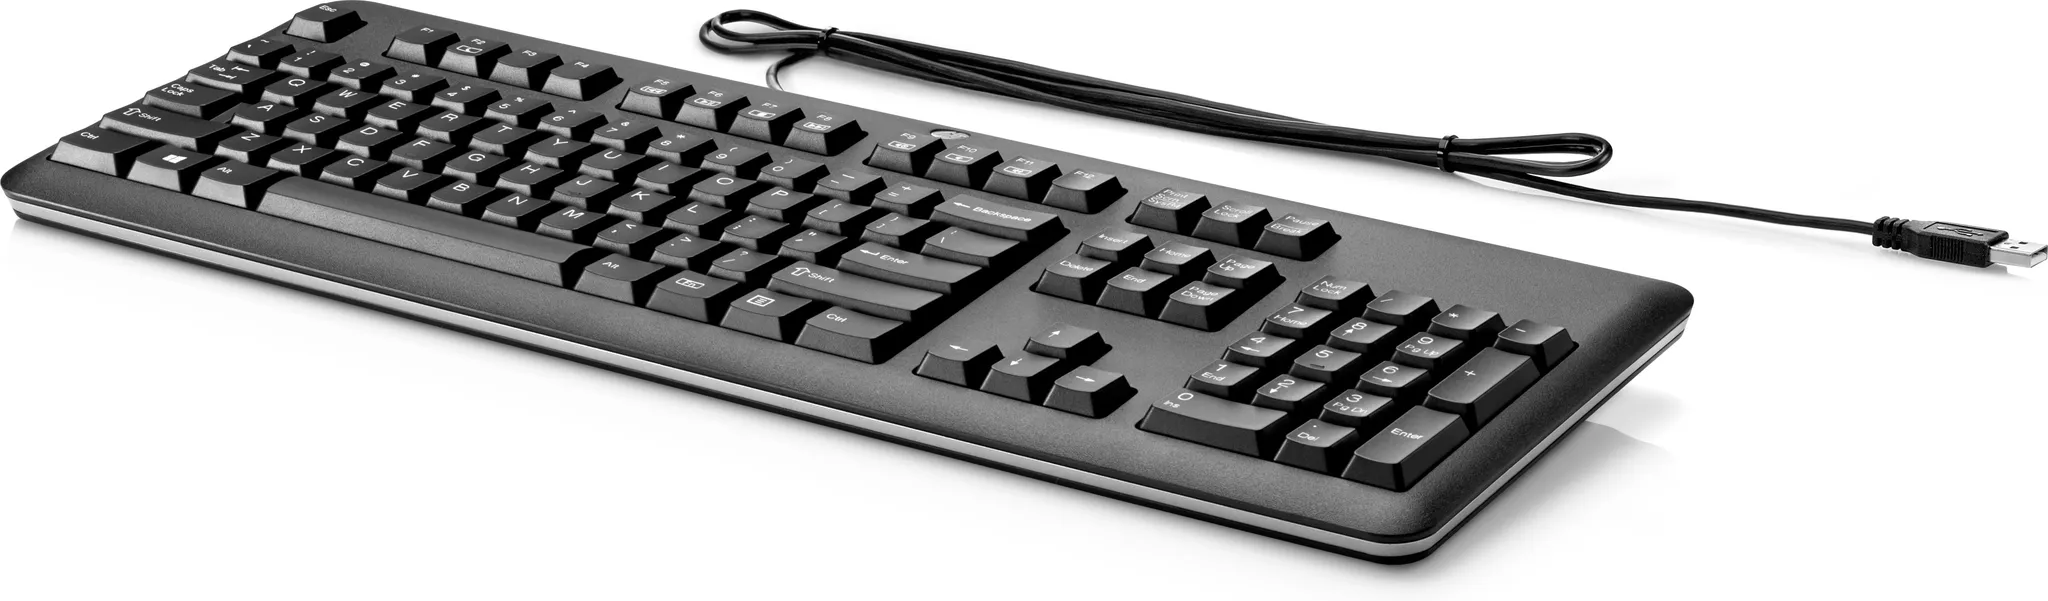 Bild von USB Standard Keyboard DE (QY776AA#ABD)